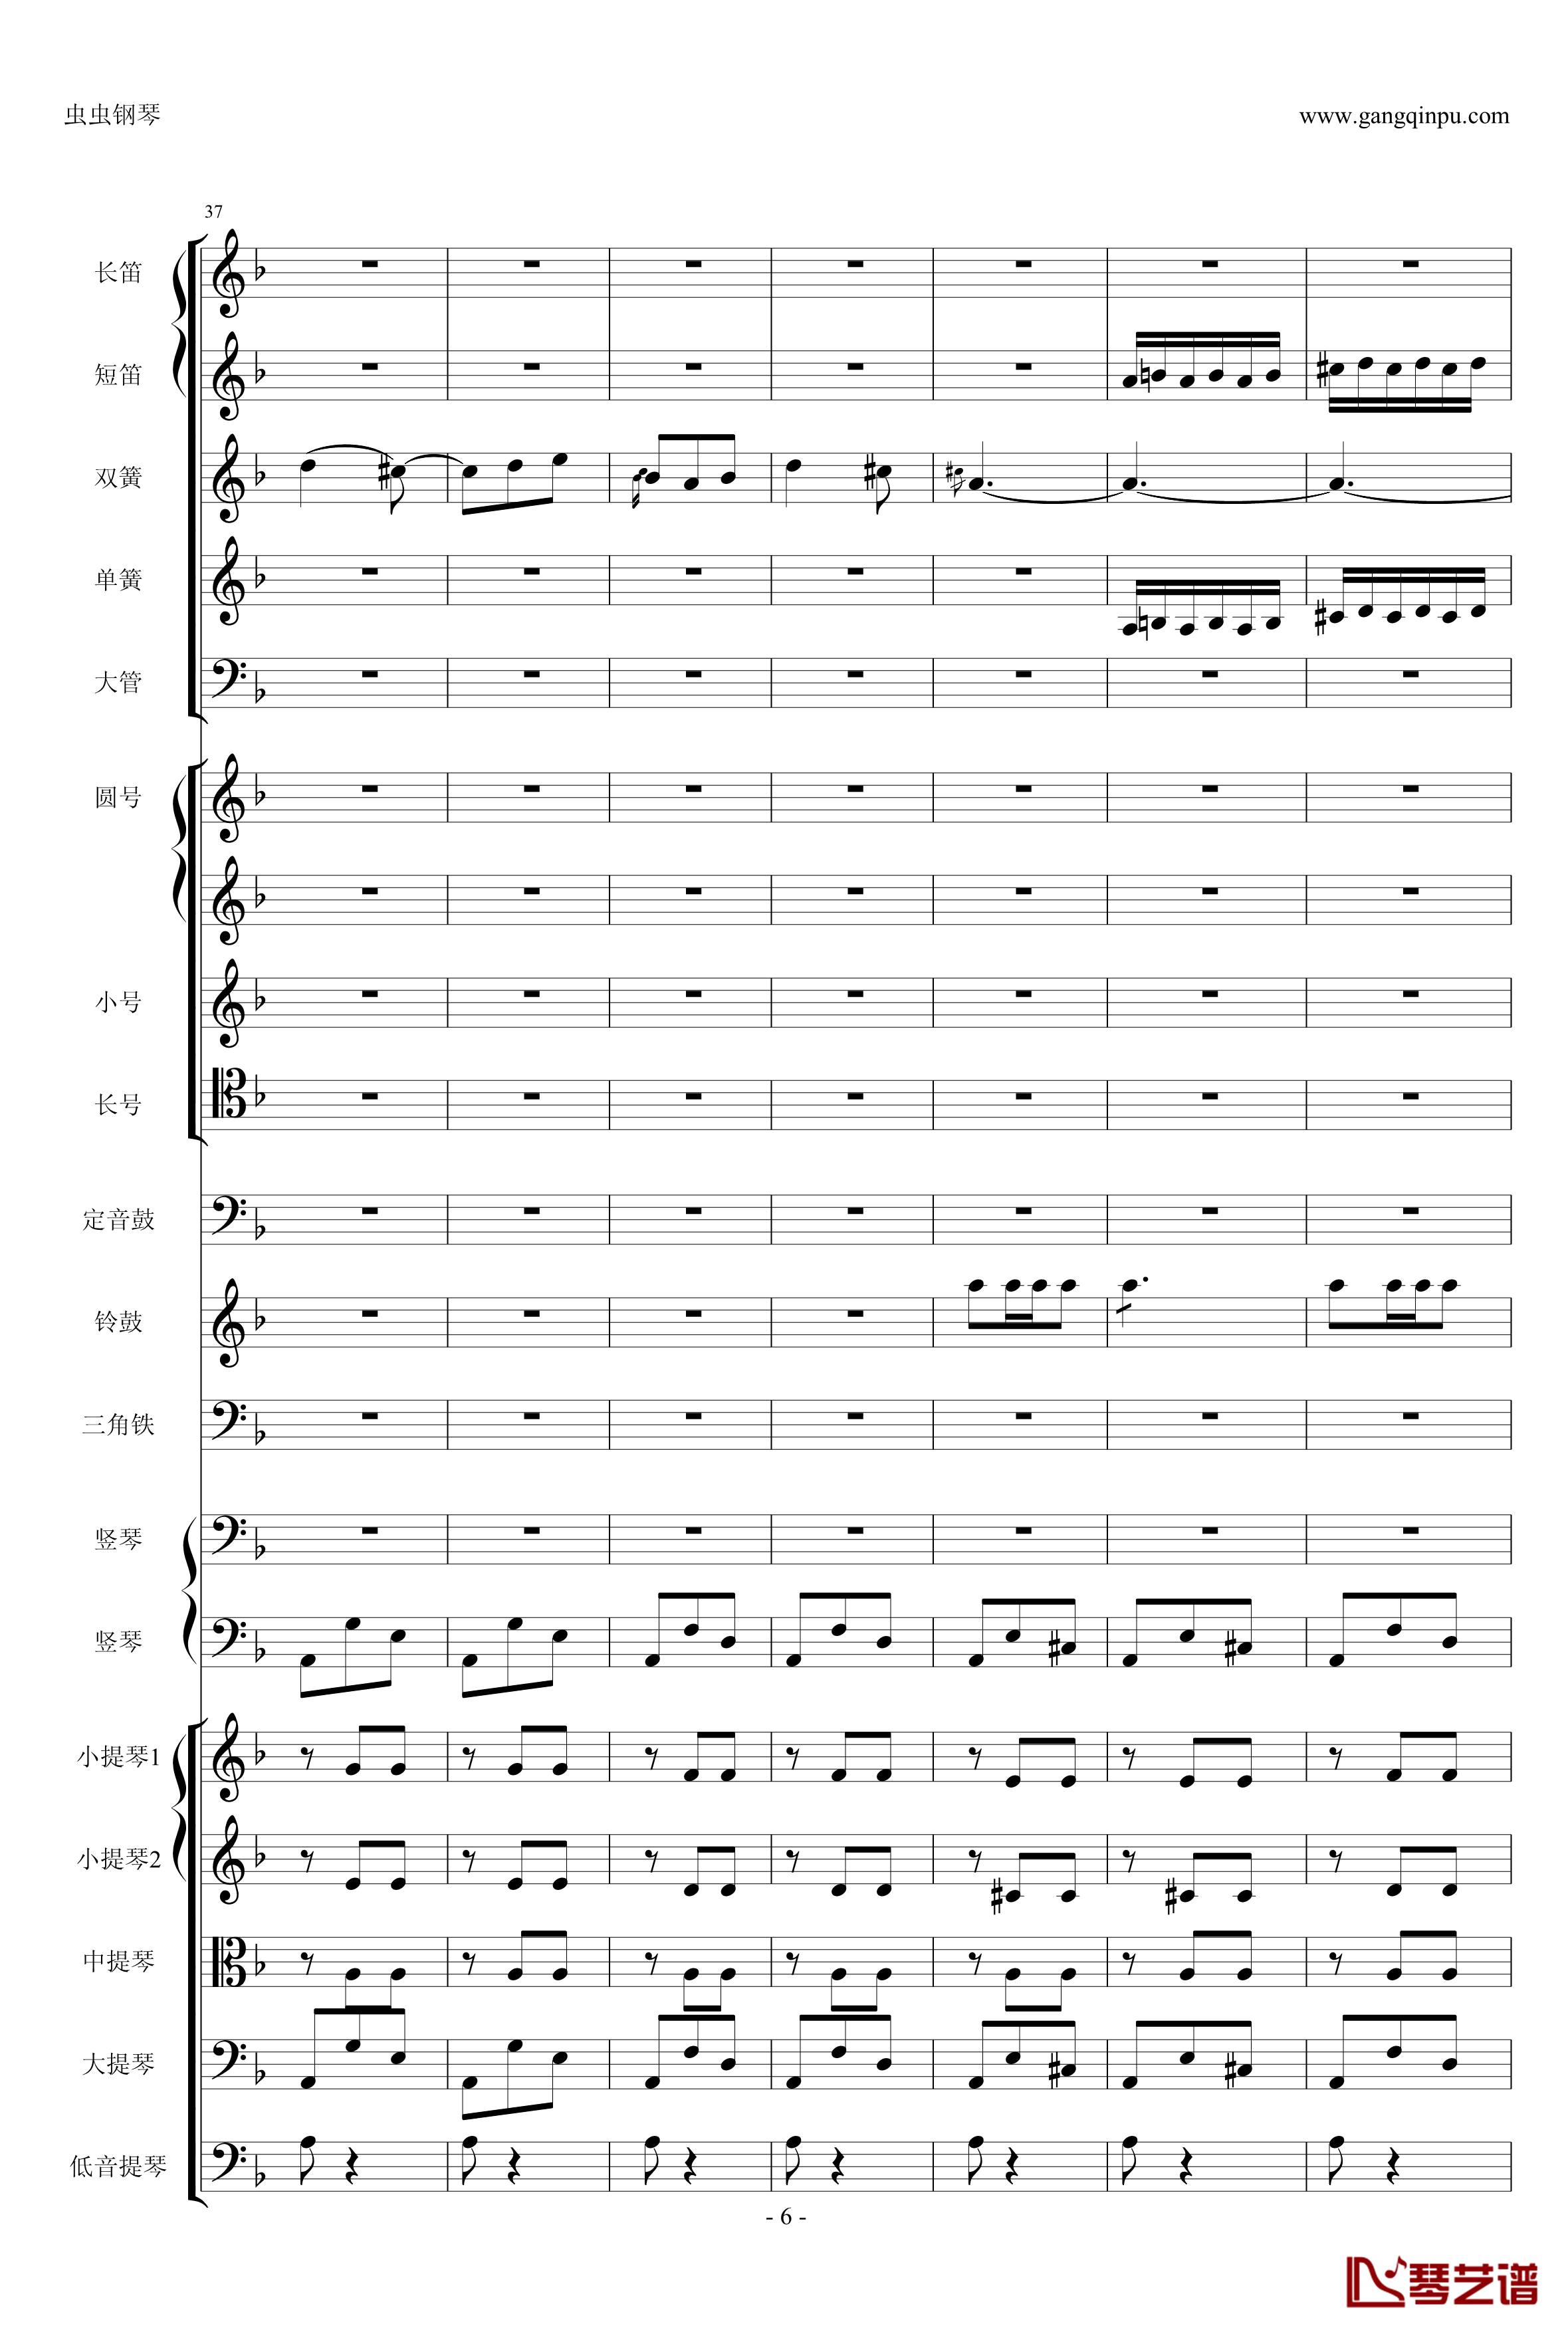 歌剧卡门选段钢琴谱-比才-Bizet- 第四幕间奏曲6